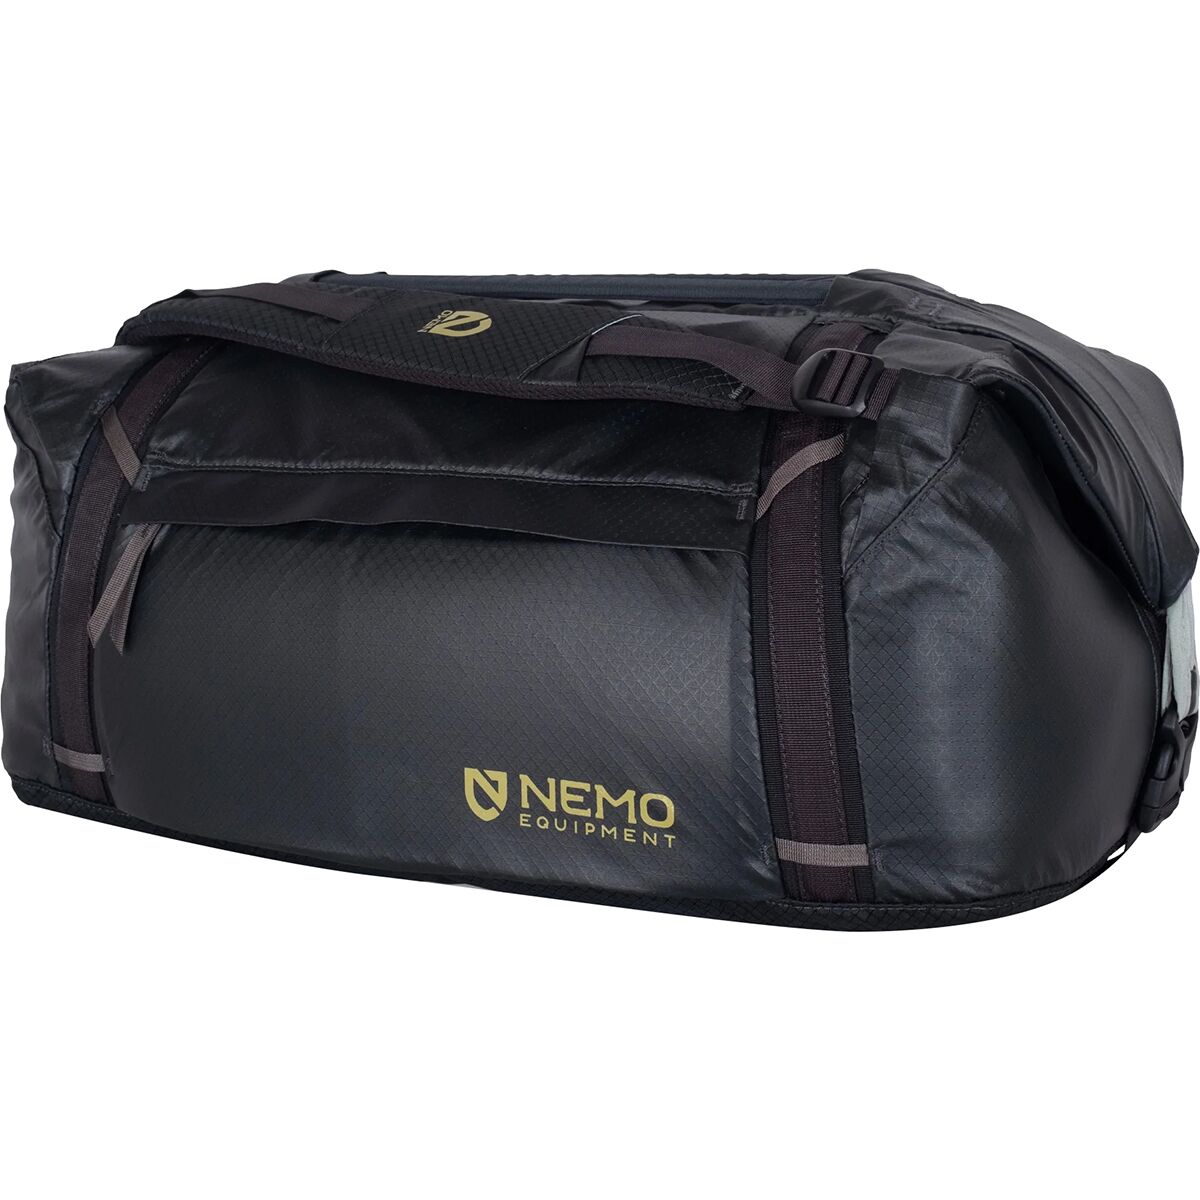 Двойная трансформируемая спортивная сумка объемом 55 л Nemo Equipment Inc., черный